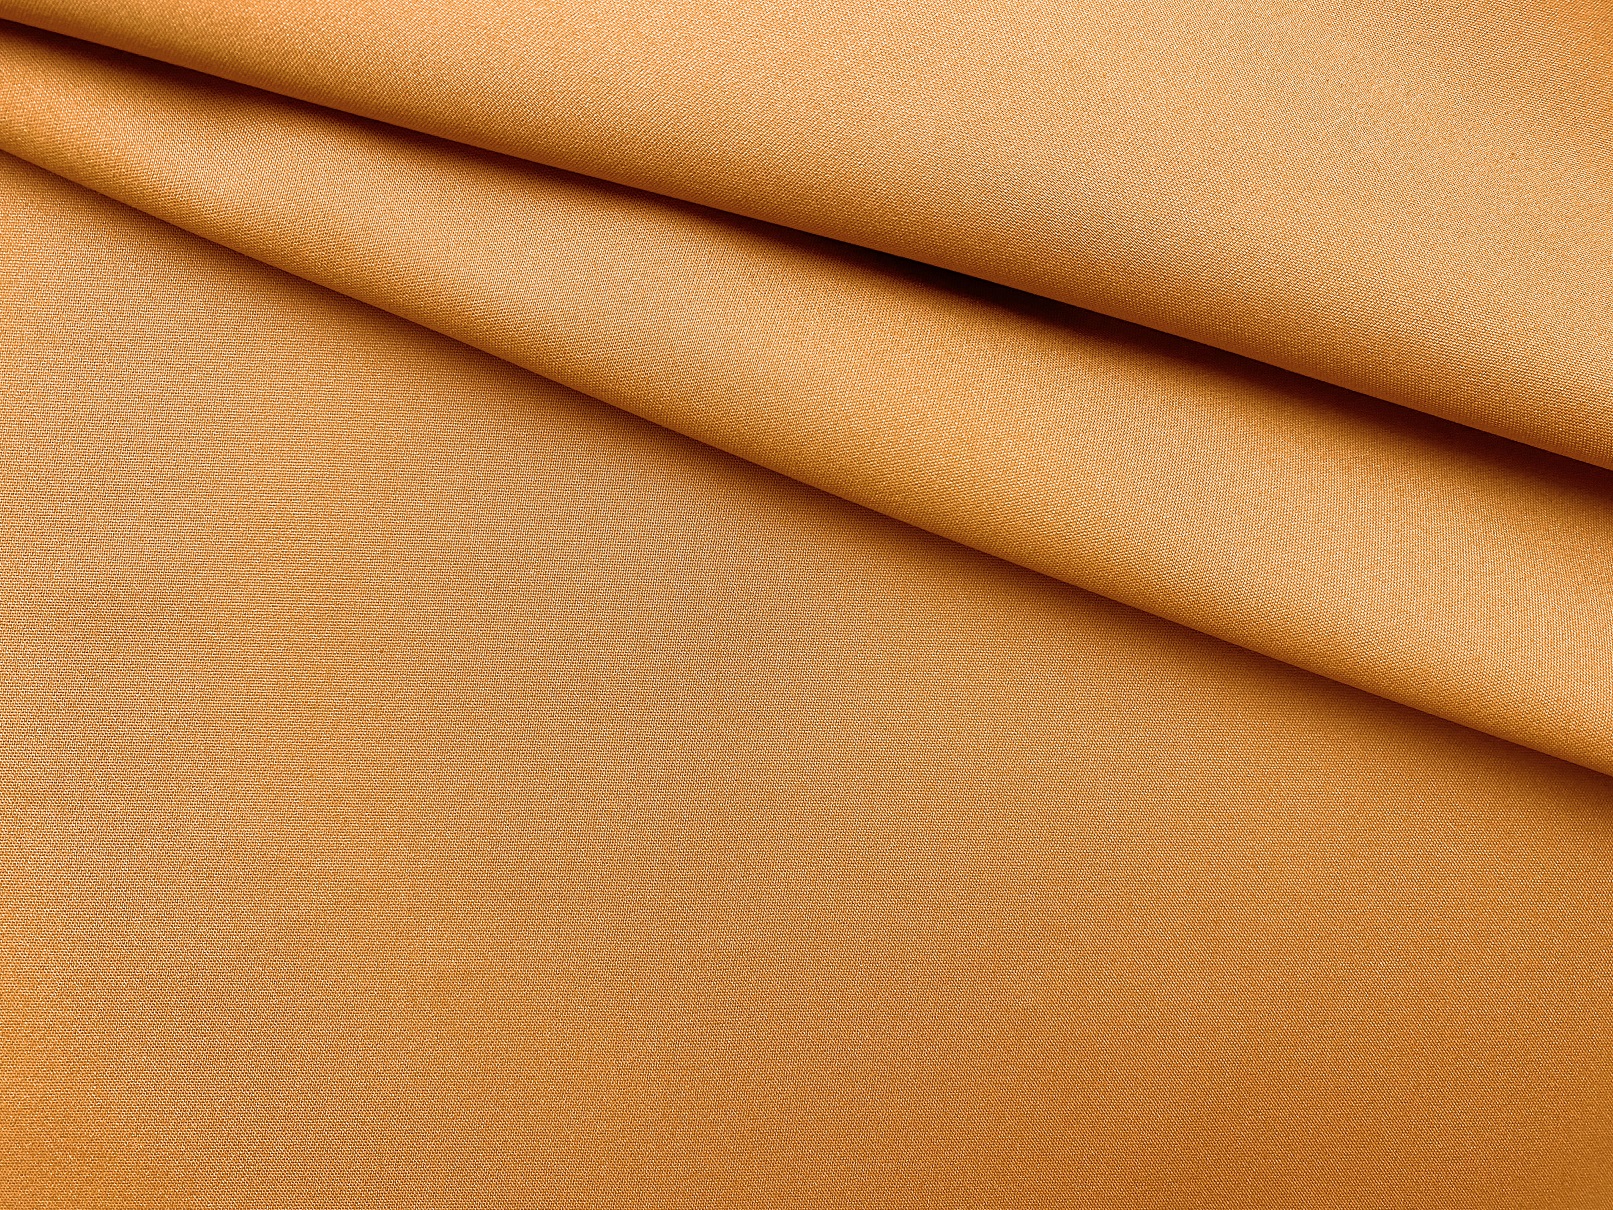 Ткань Хлопок цвета охры  однотонная 16826 1